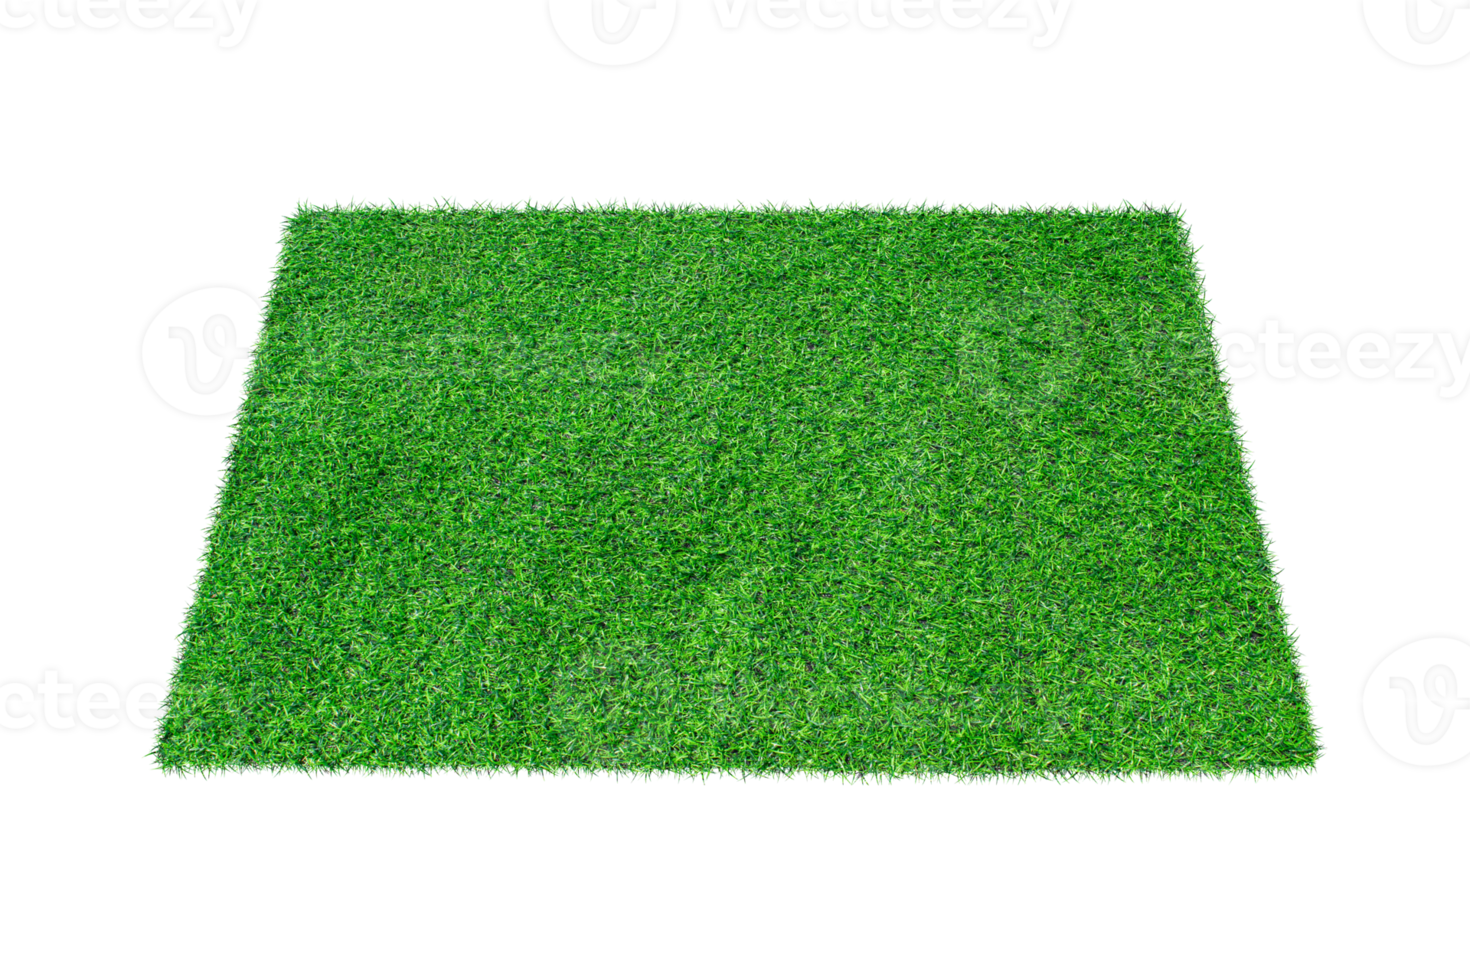 alfombra verde artificial hierba aislada 10870289 PNG